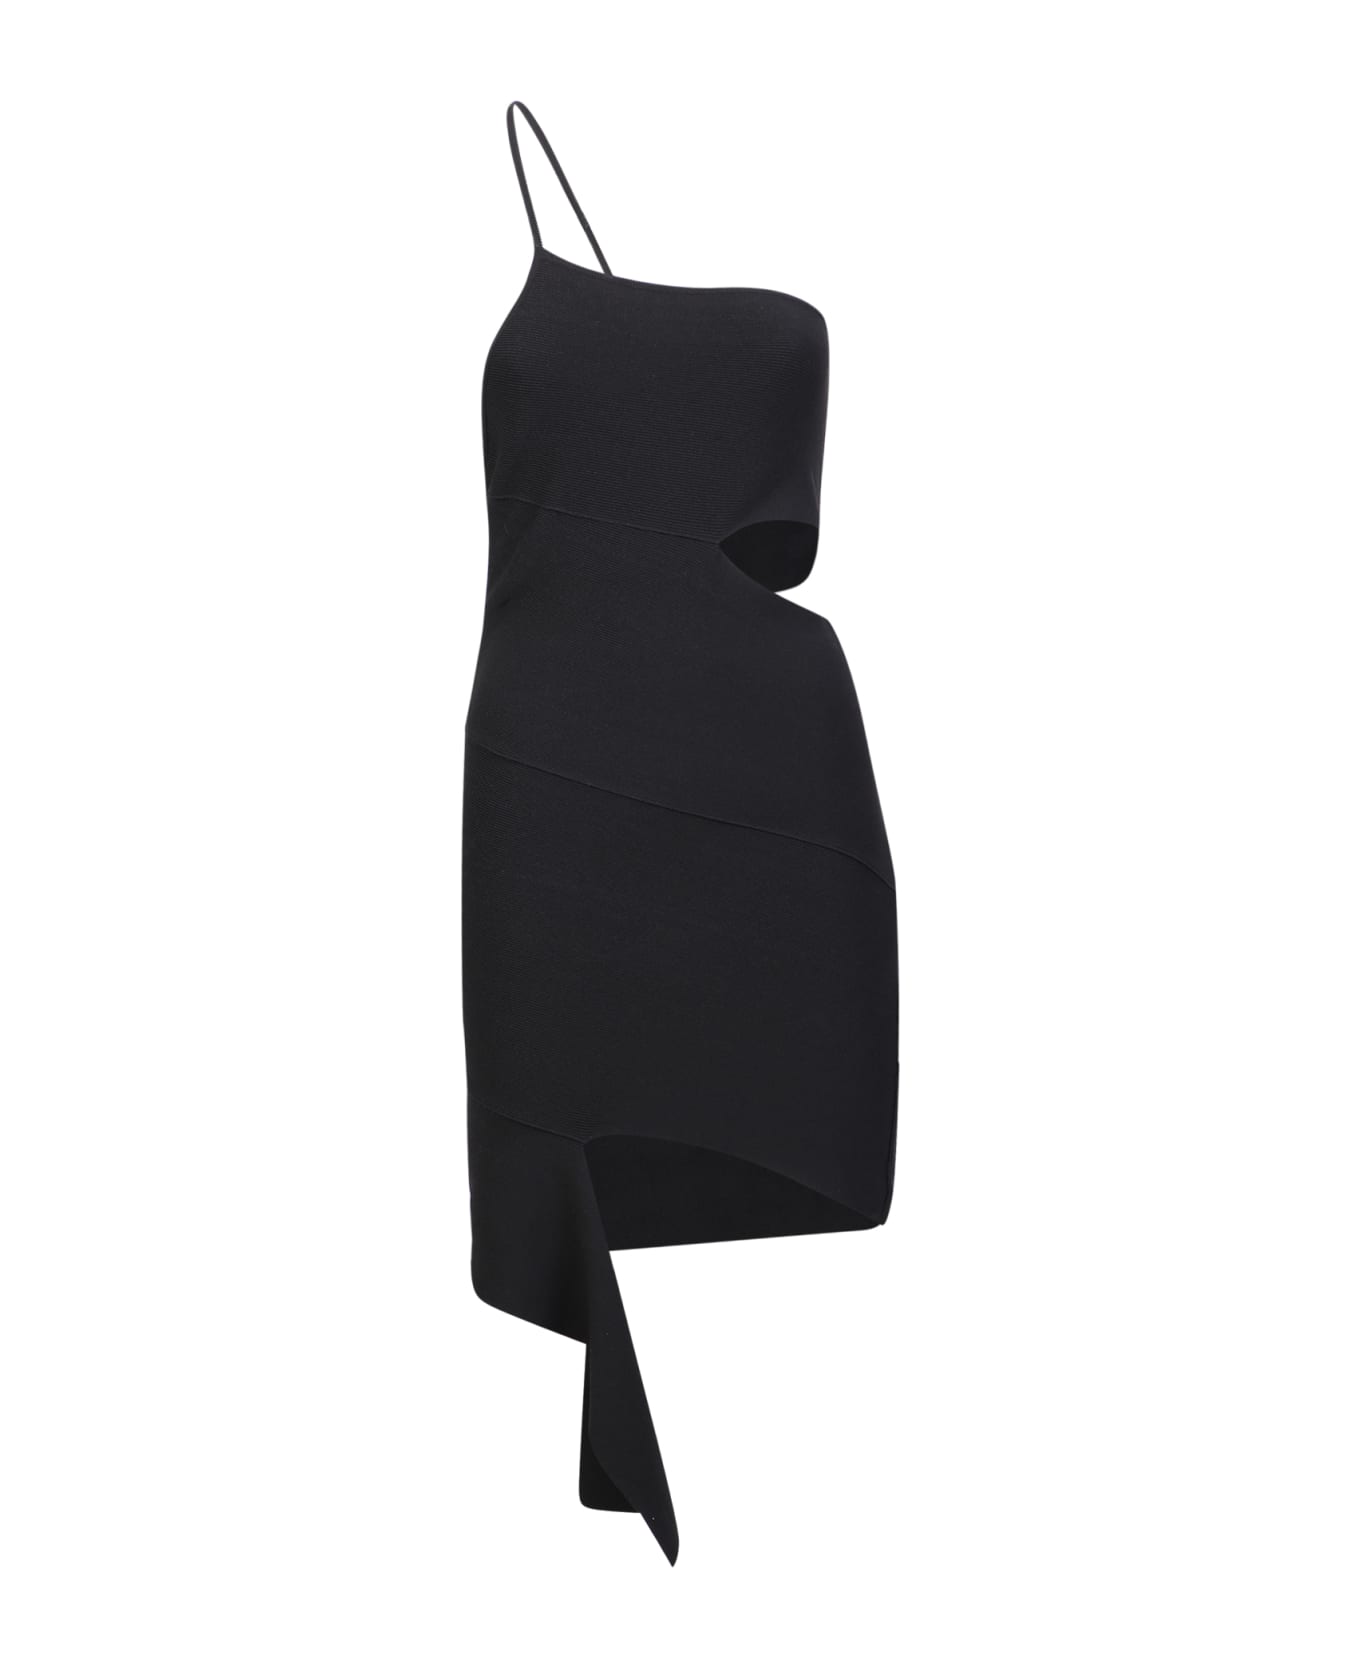 ANDREĀDAMO One Shoulder Dress - Black